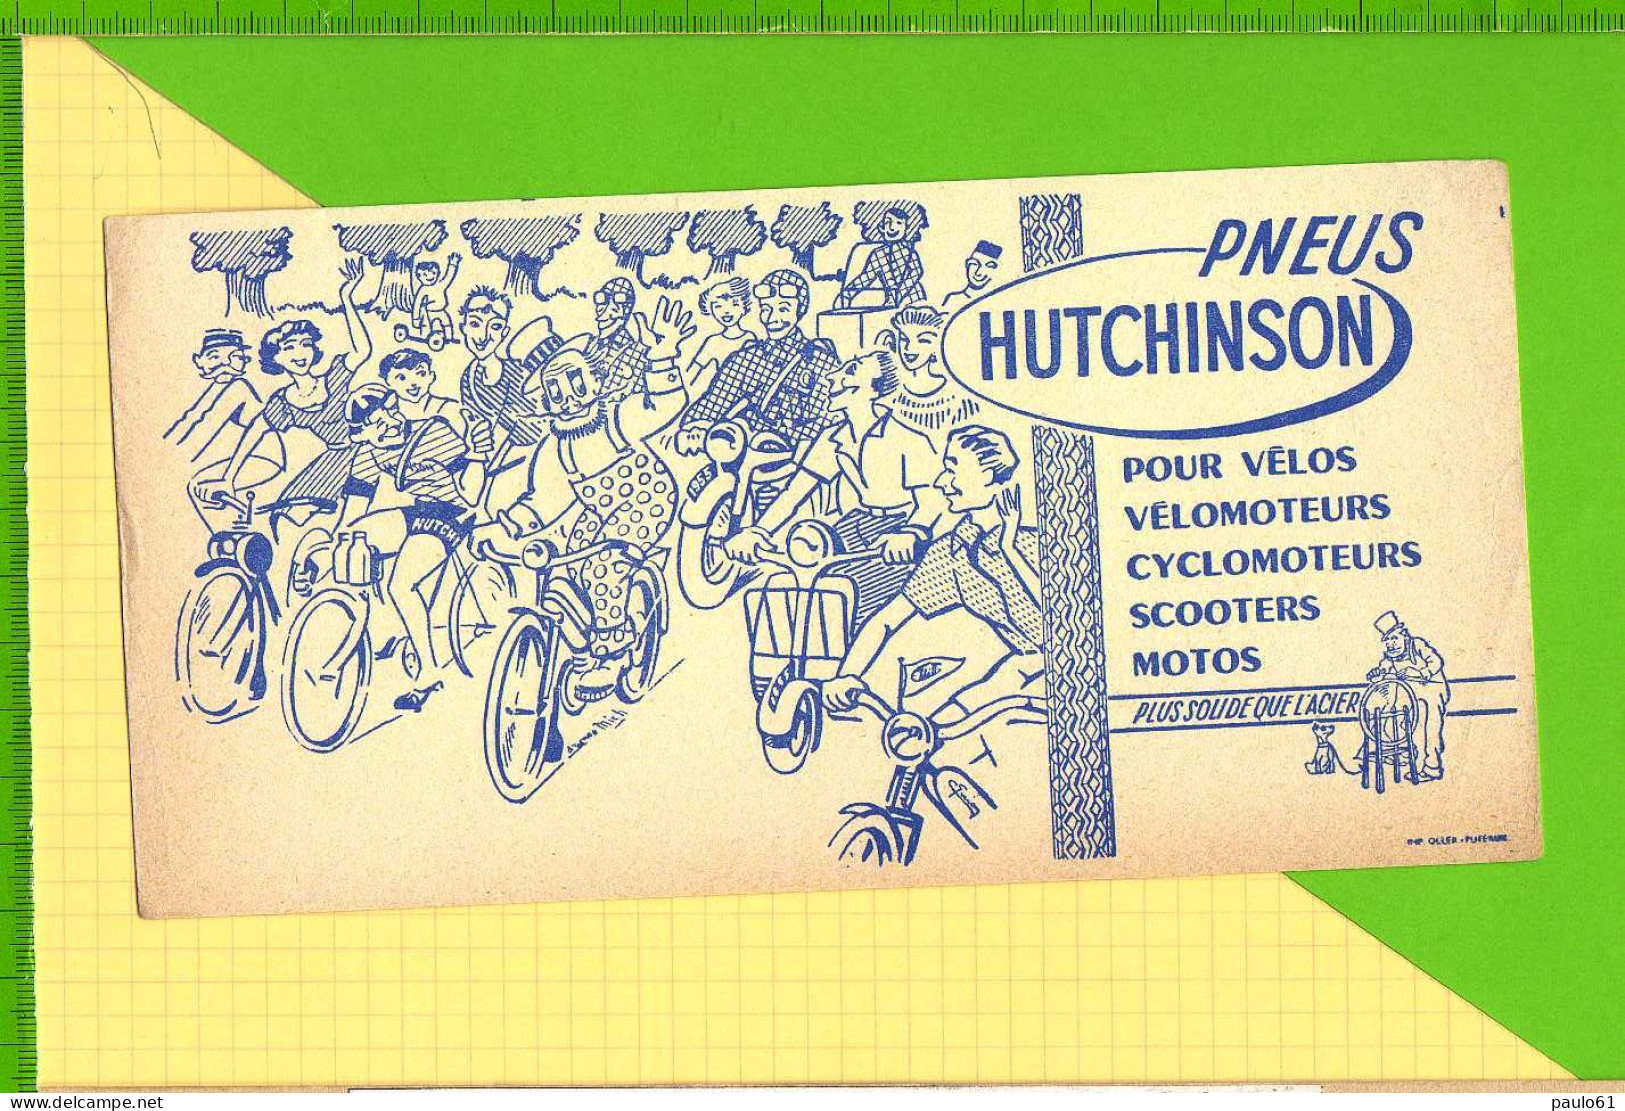 BUVARD & Blotting Paper :  Pneus HUTCHINSON  Velo Velomoteur Scooter Signé Mich Plus Solide Que L'Acier - Motos & Bicicletas